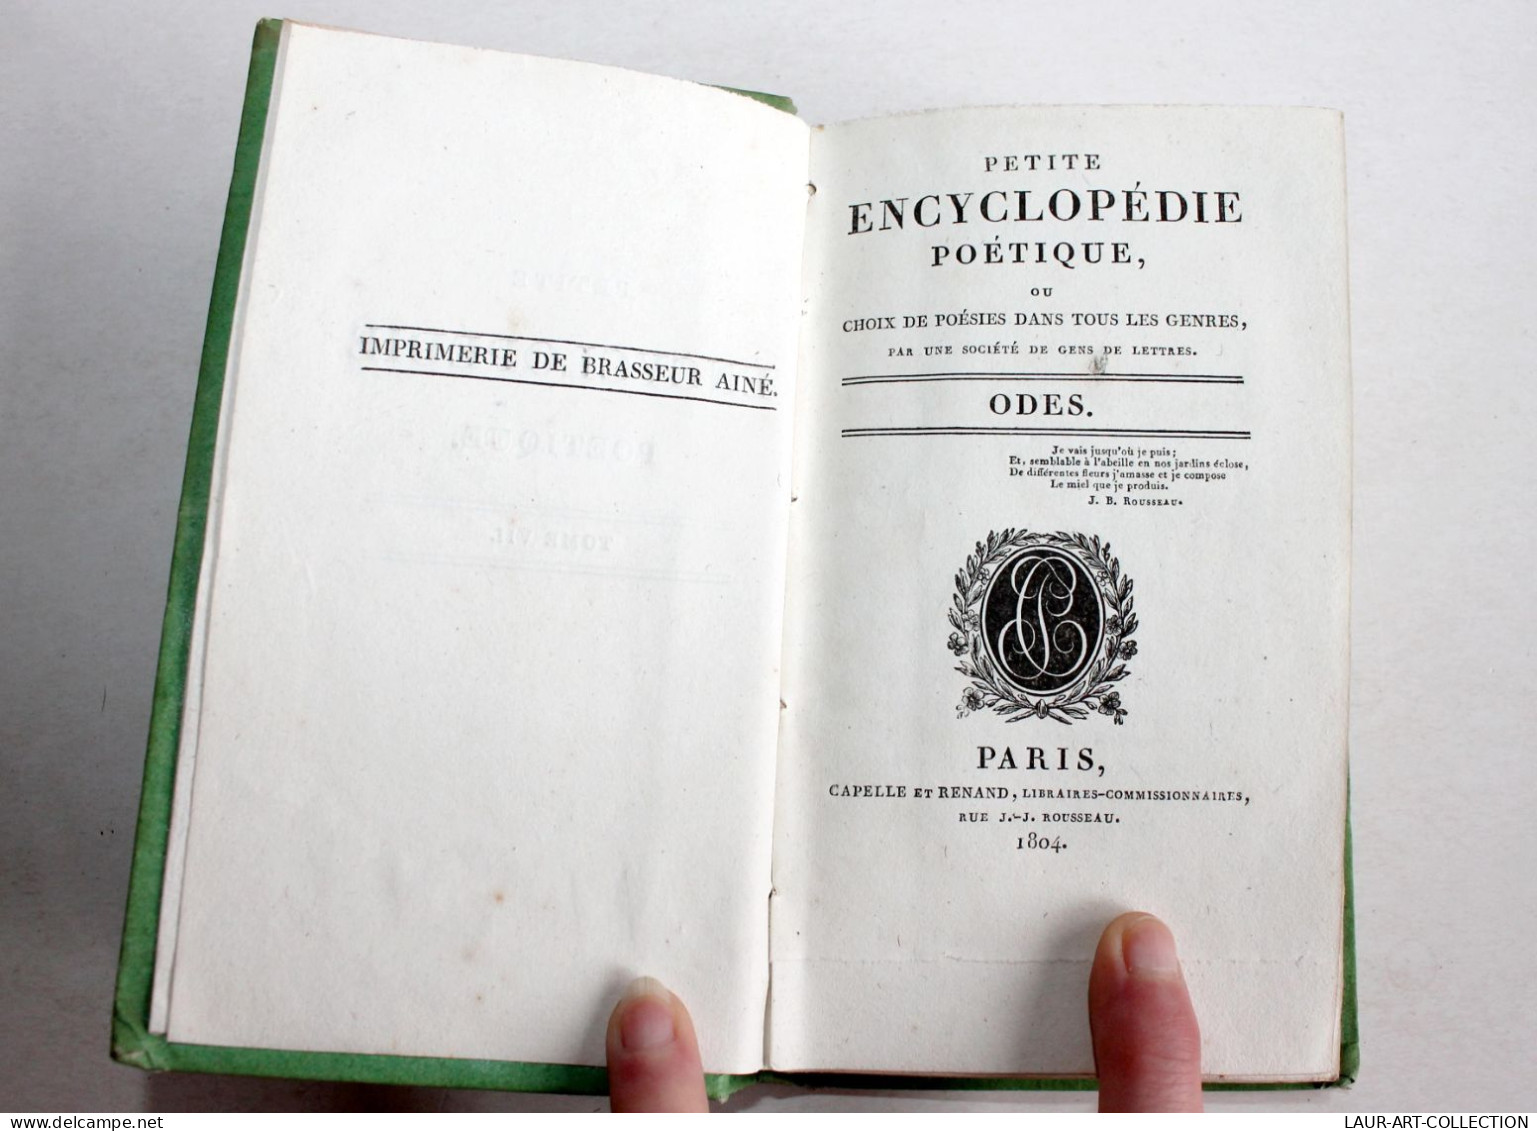 PETITE ENCYCLOPEDIE POETIQUE CHOIX POESIES TOUS GENRES CONTENANT 50 ODES 1804 T7 / ANCIEN LIVRE XIXe SIECLE (1803.184) - French Authors